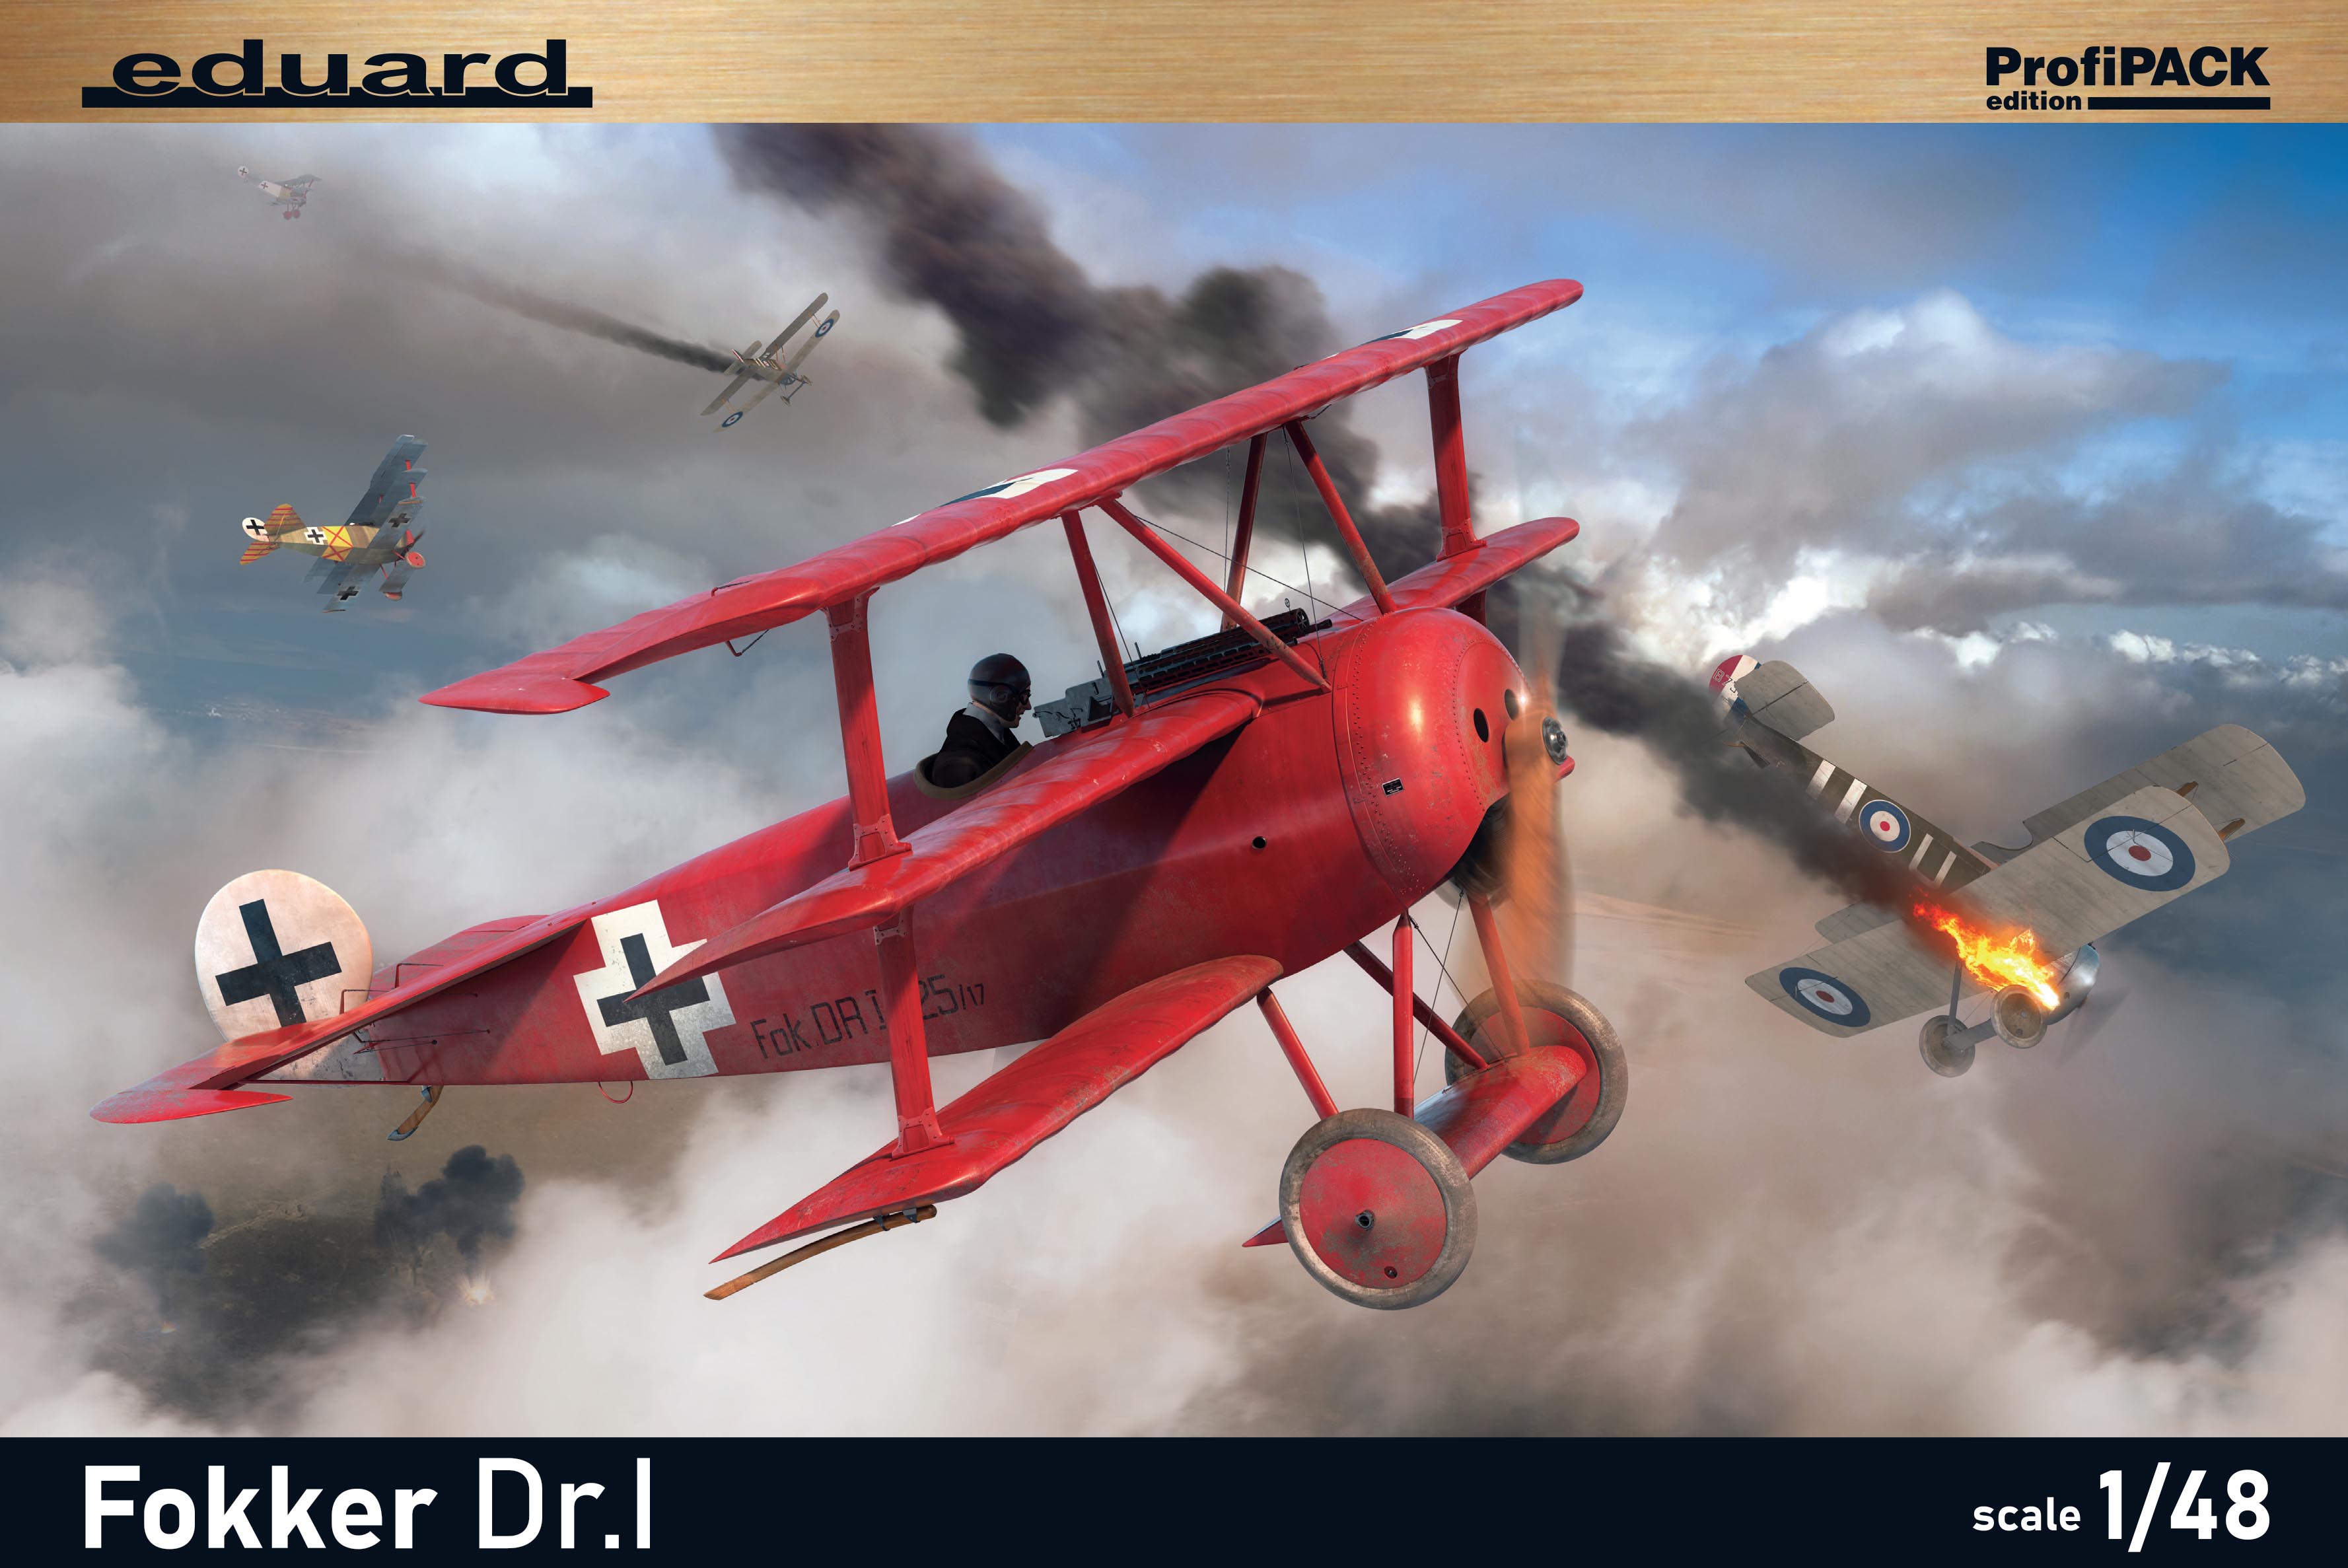 Fotografie 1/48 Fokker Dr.I (Profipack)